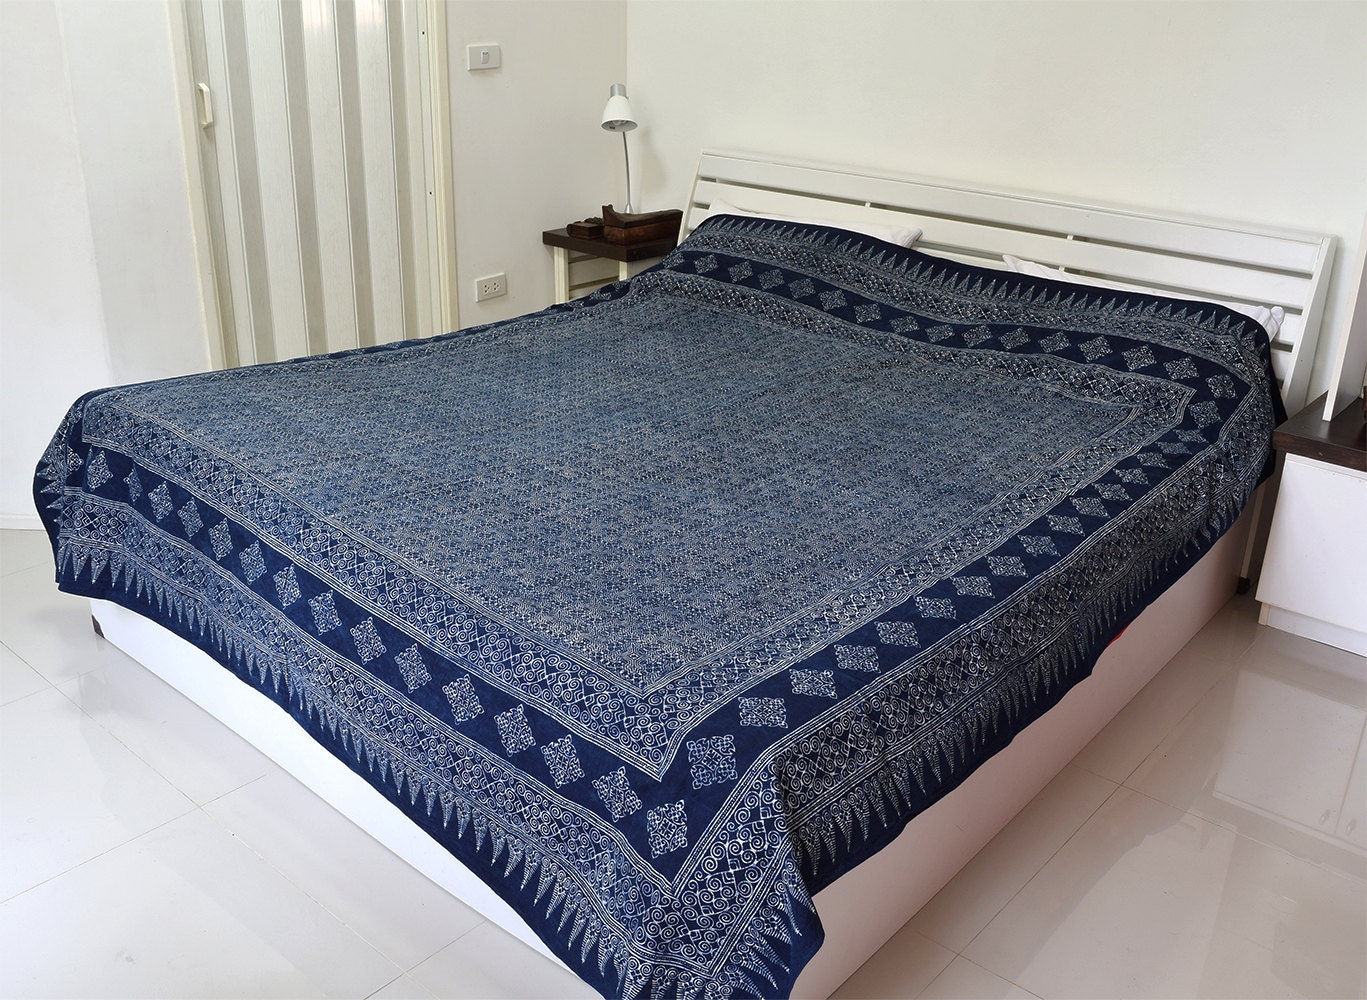 Hmong Bed  Cover  Indigo Batik  Duvet Cover  Throw Sheet King